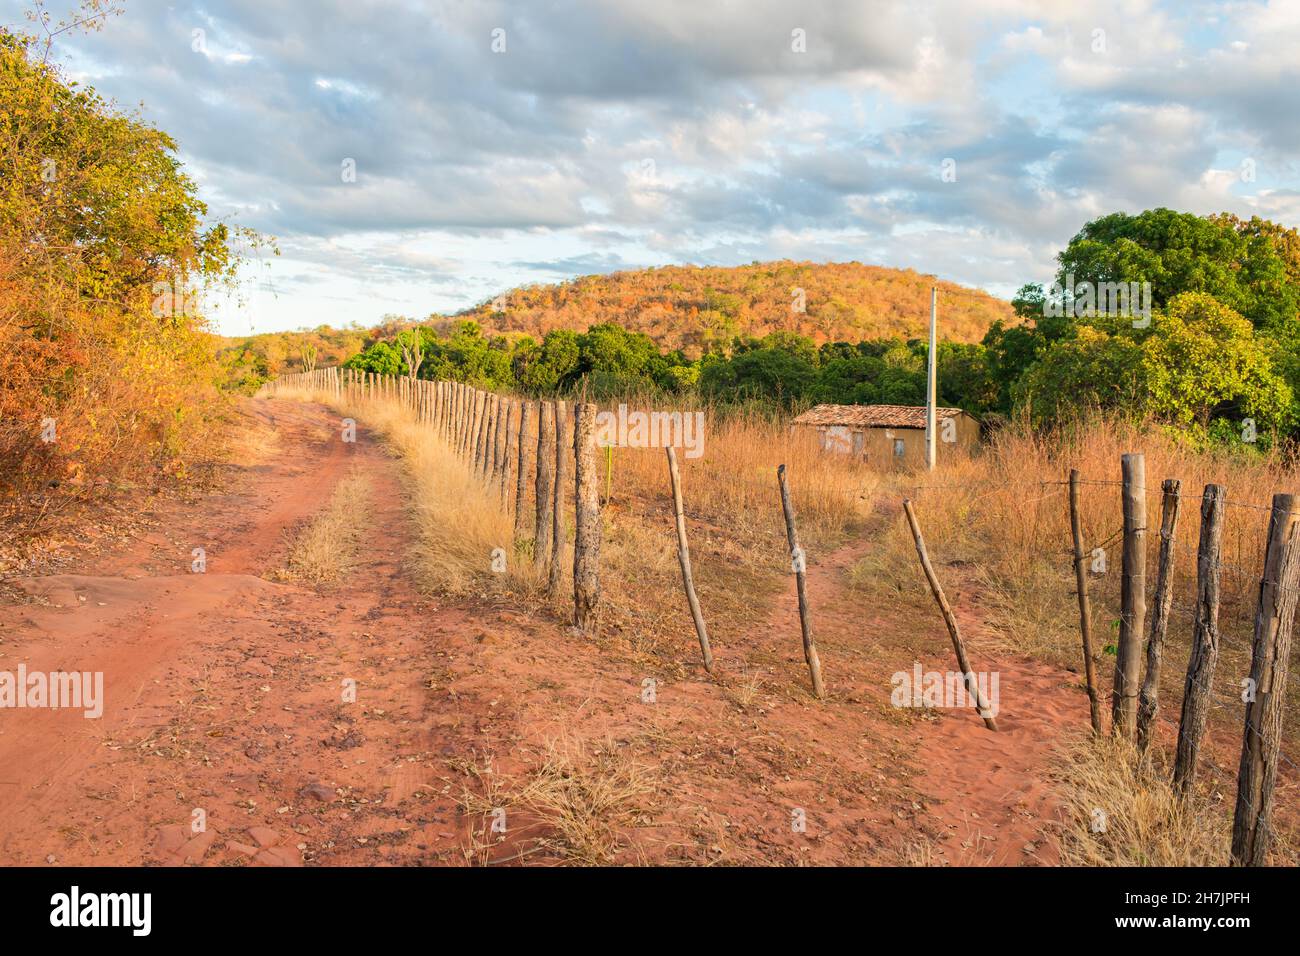 Haus auf dem Land, Caatinga Landschaft im Herbst (Beginn der Trockenzeit) - Oeiras, Piaui Staat, Brasilien Stockfoto